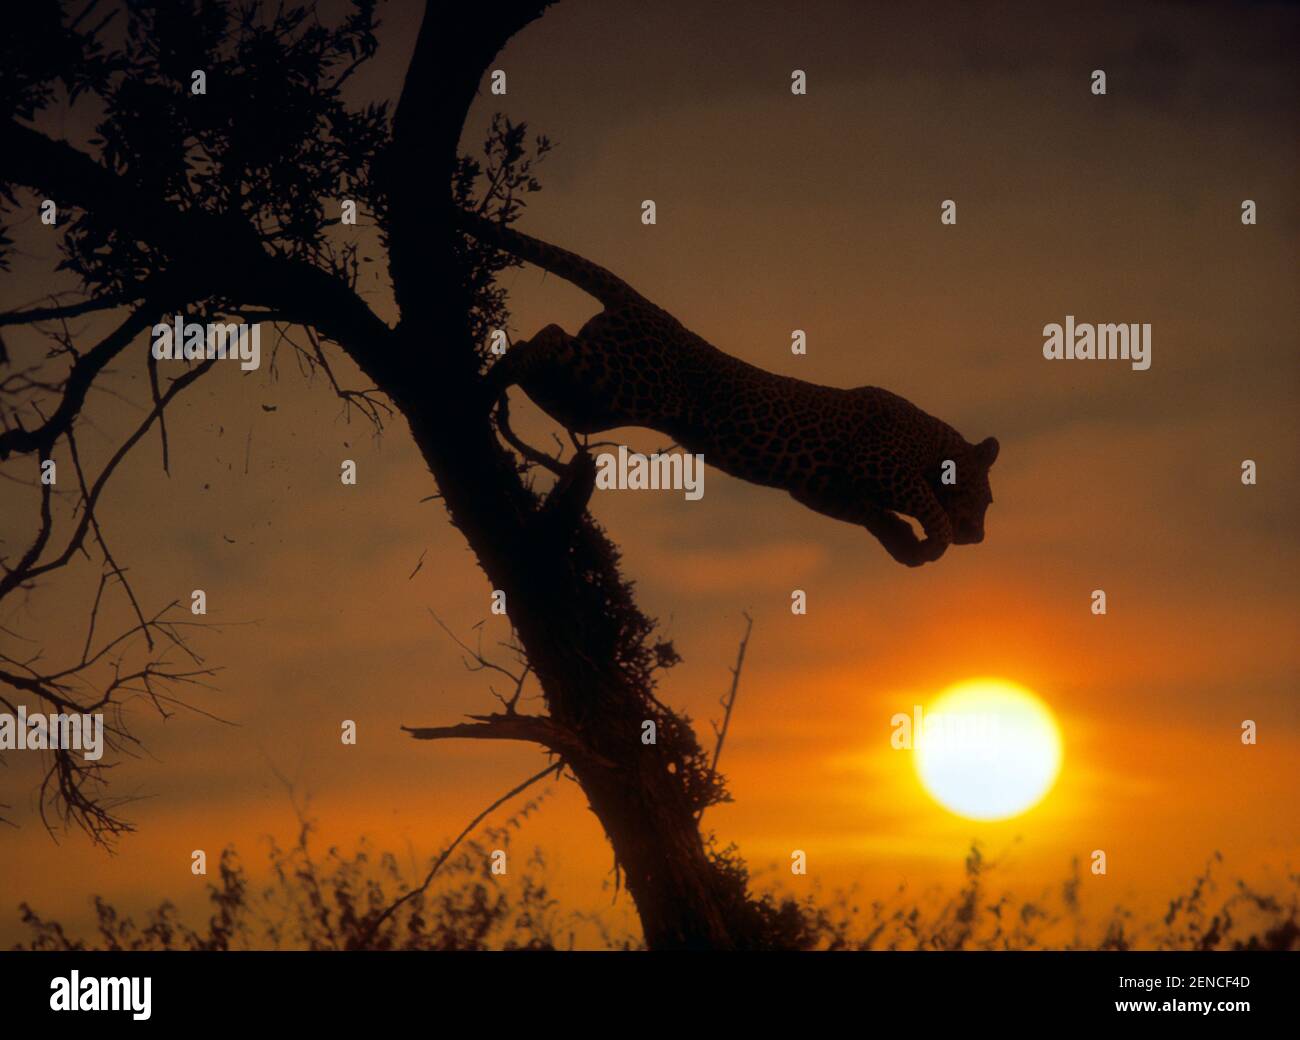 Leopard springt vom Baum, Panthera pardus, Sonnenuntergang, Silhouette Banque D'Images